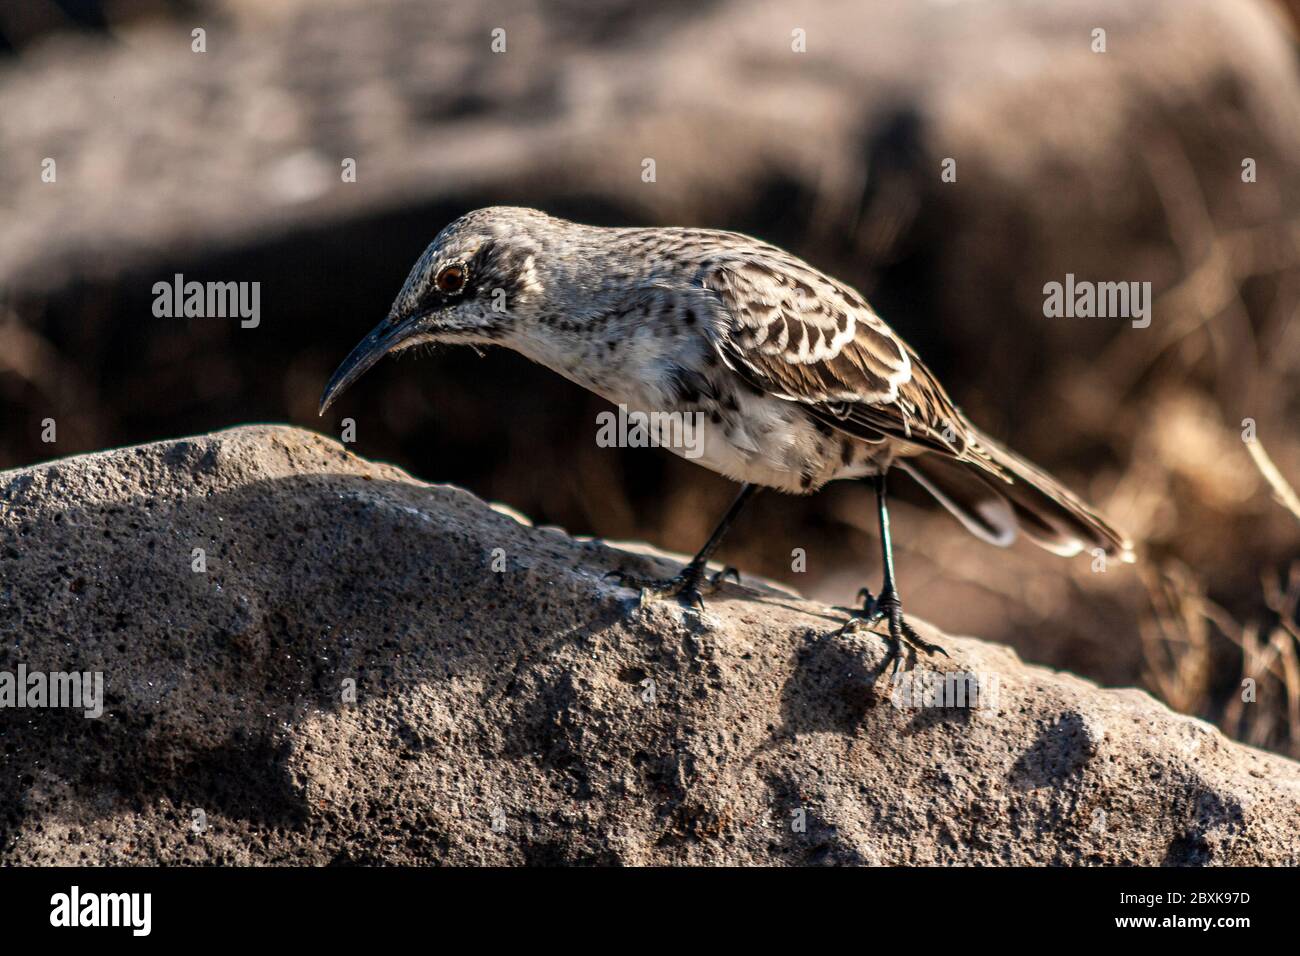 Espanola Mockingbird debout dans un rocher par une journée ensoleillée Banque D'Images